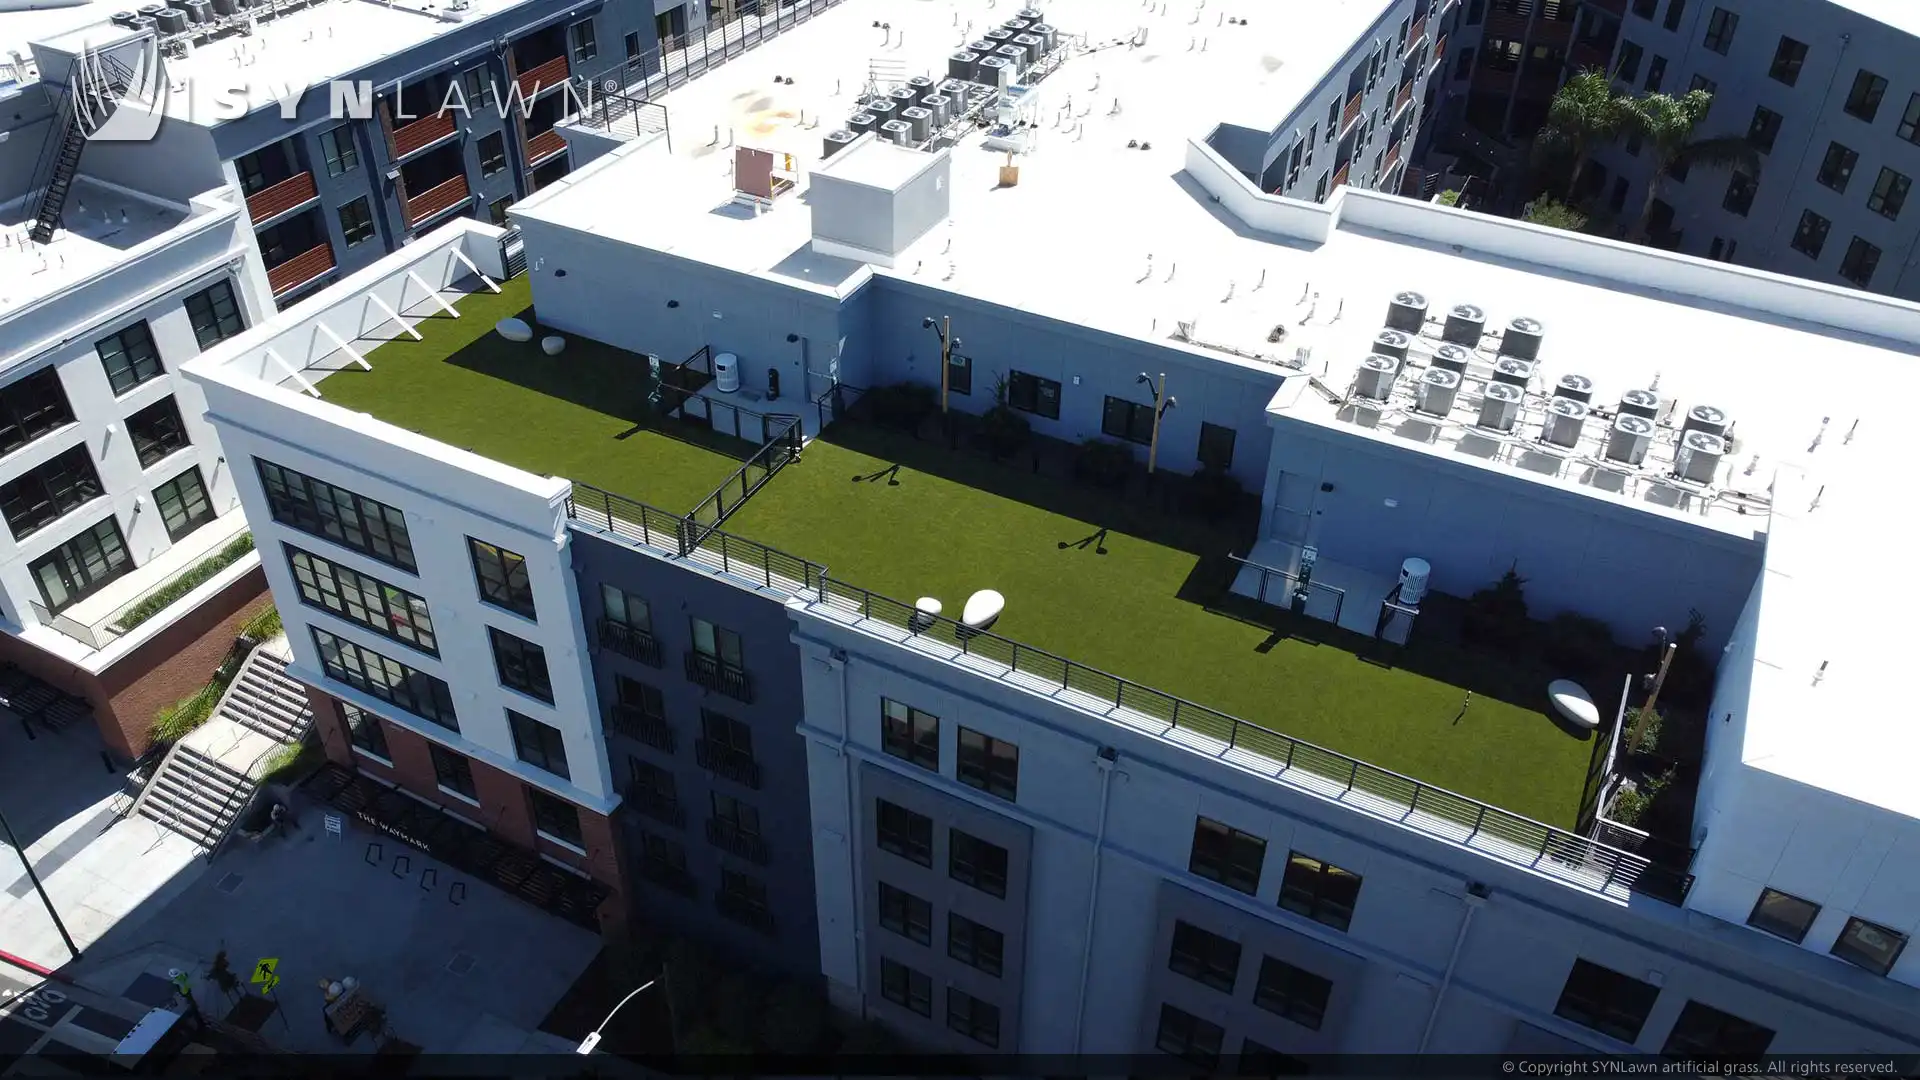 The Waymark construit une oasis sur le toit pour offrir aux résidents des équipements haut de gamme